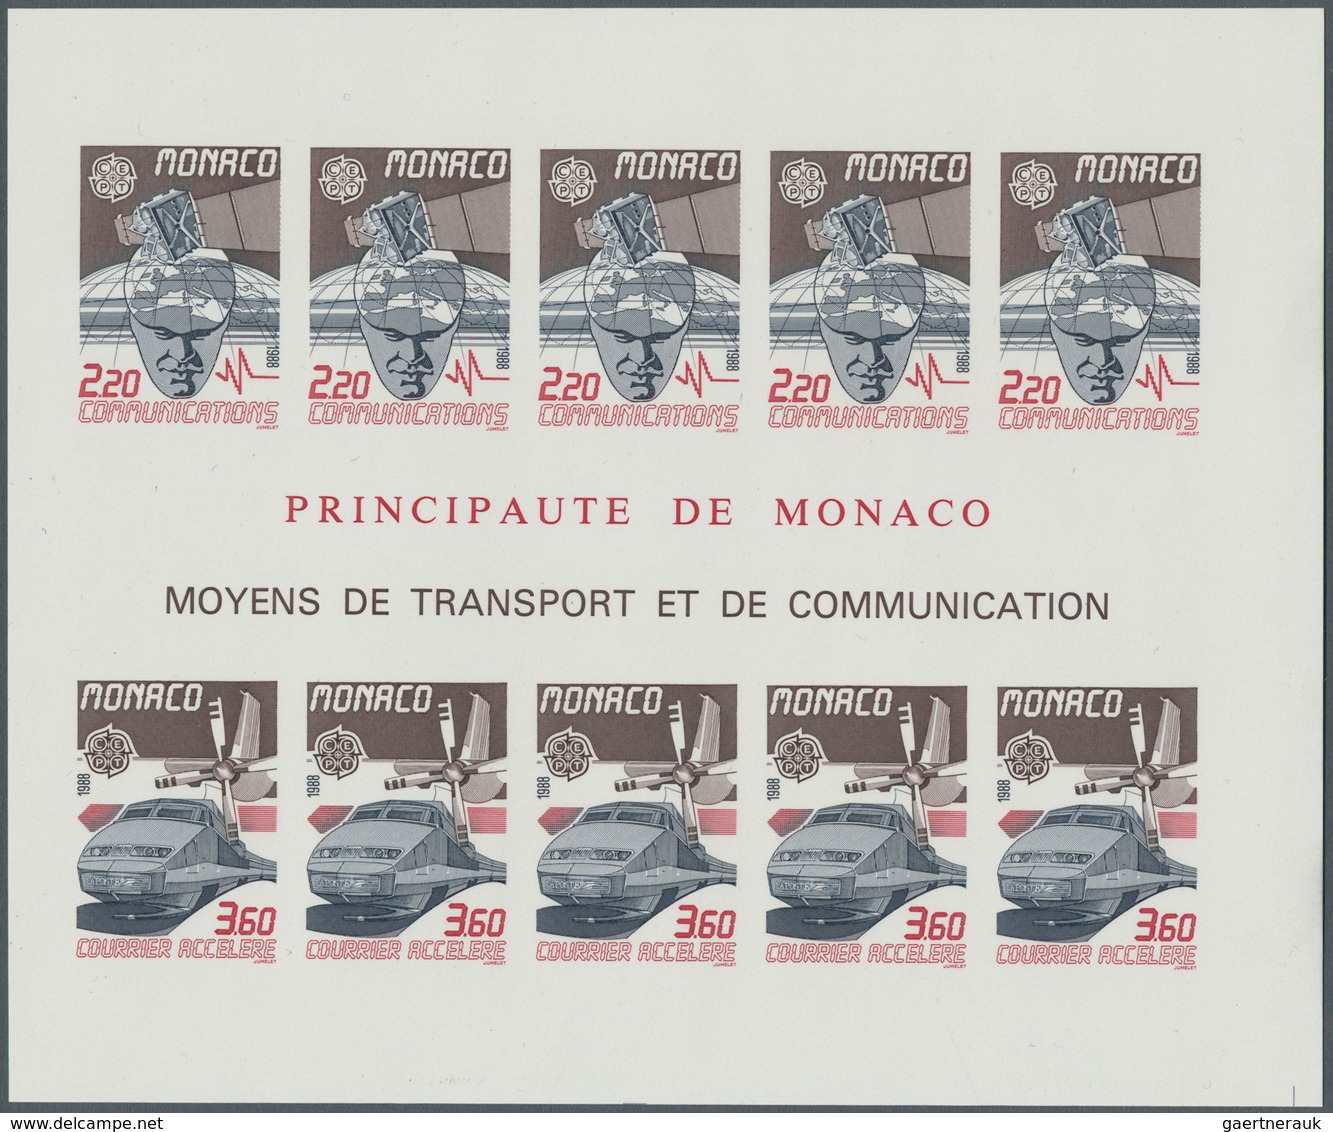 Monaco: 1988, Europa-Cept, Souvenir Sheet IMPERFORATE, 100 Pieces Unmounted Mint. Maury 1659A Nd (10 - Oblitérés